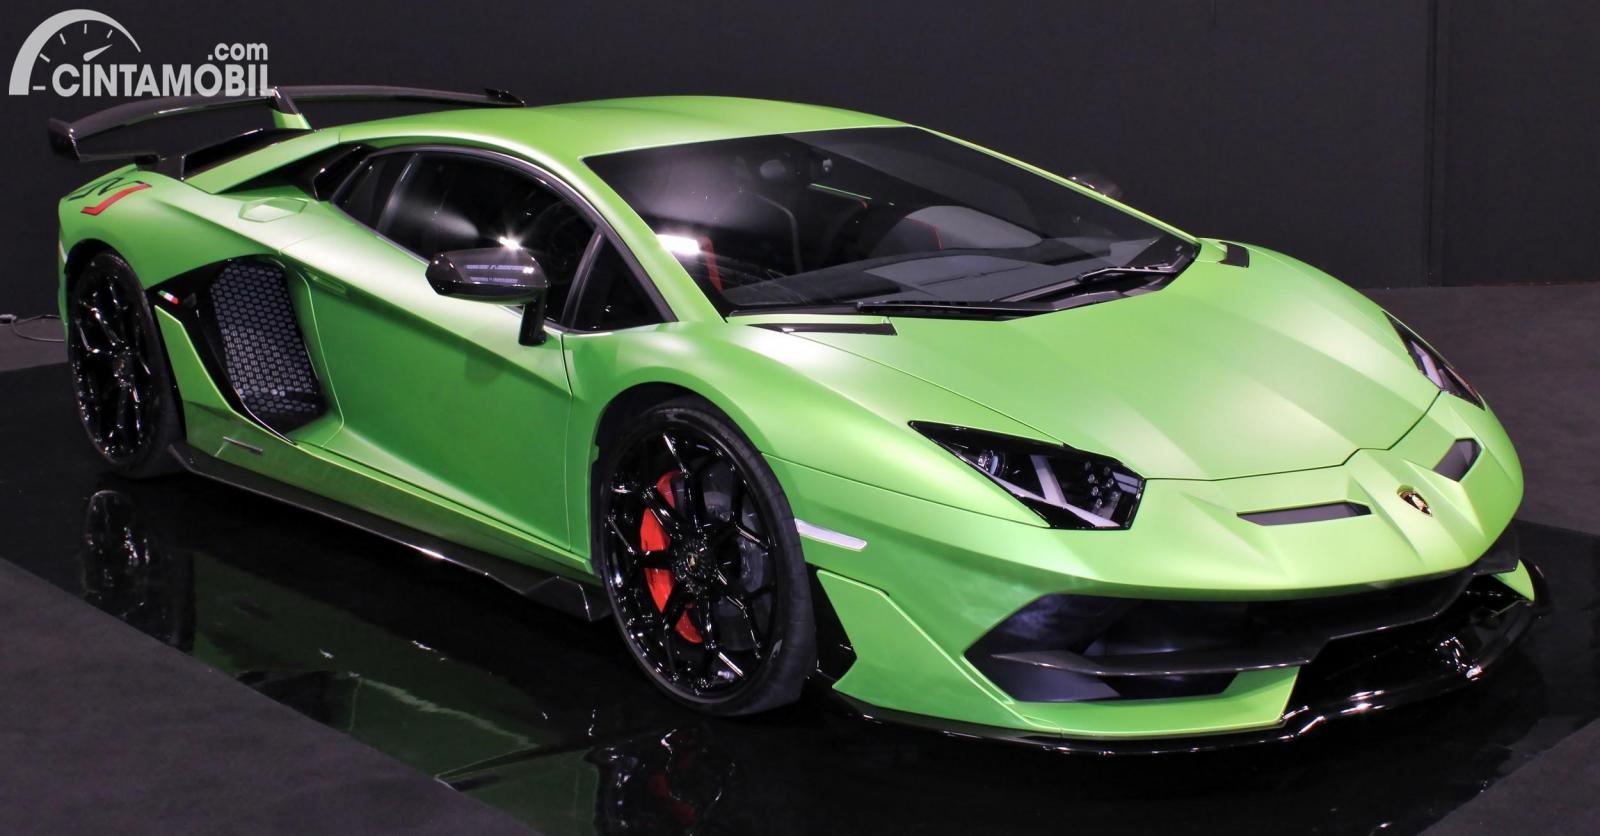 Gambar menunjukkan sebuah mobil Lamborghini Aventador berwarna hijau dilihat dari sisi depan